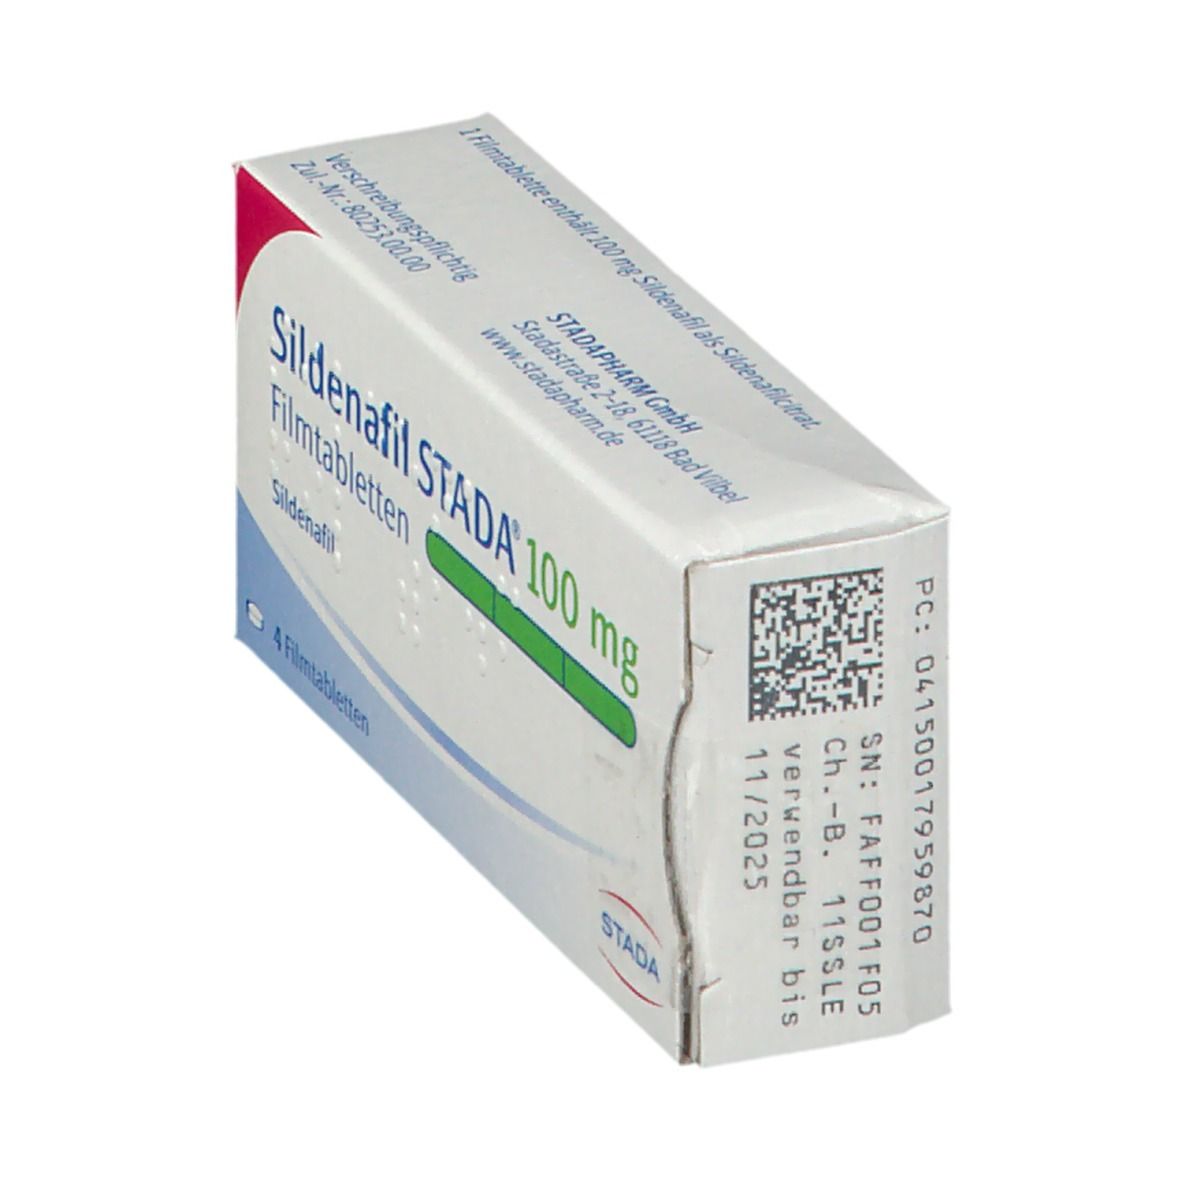 Sildenafil STADA® 100 mg